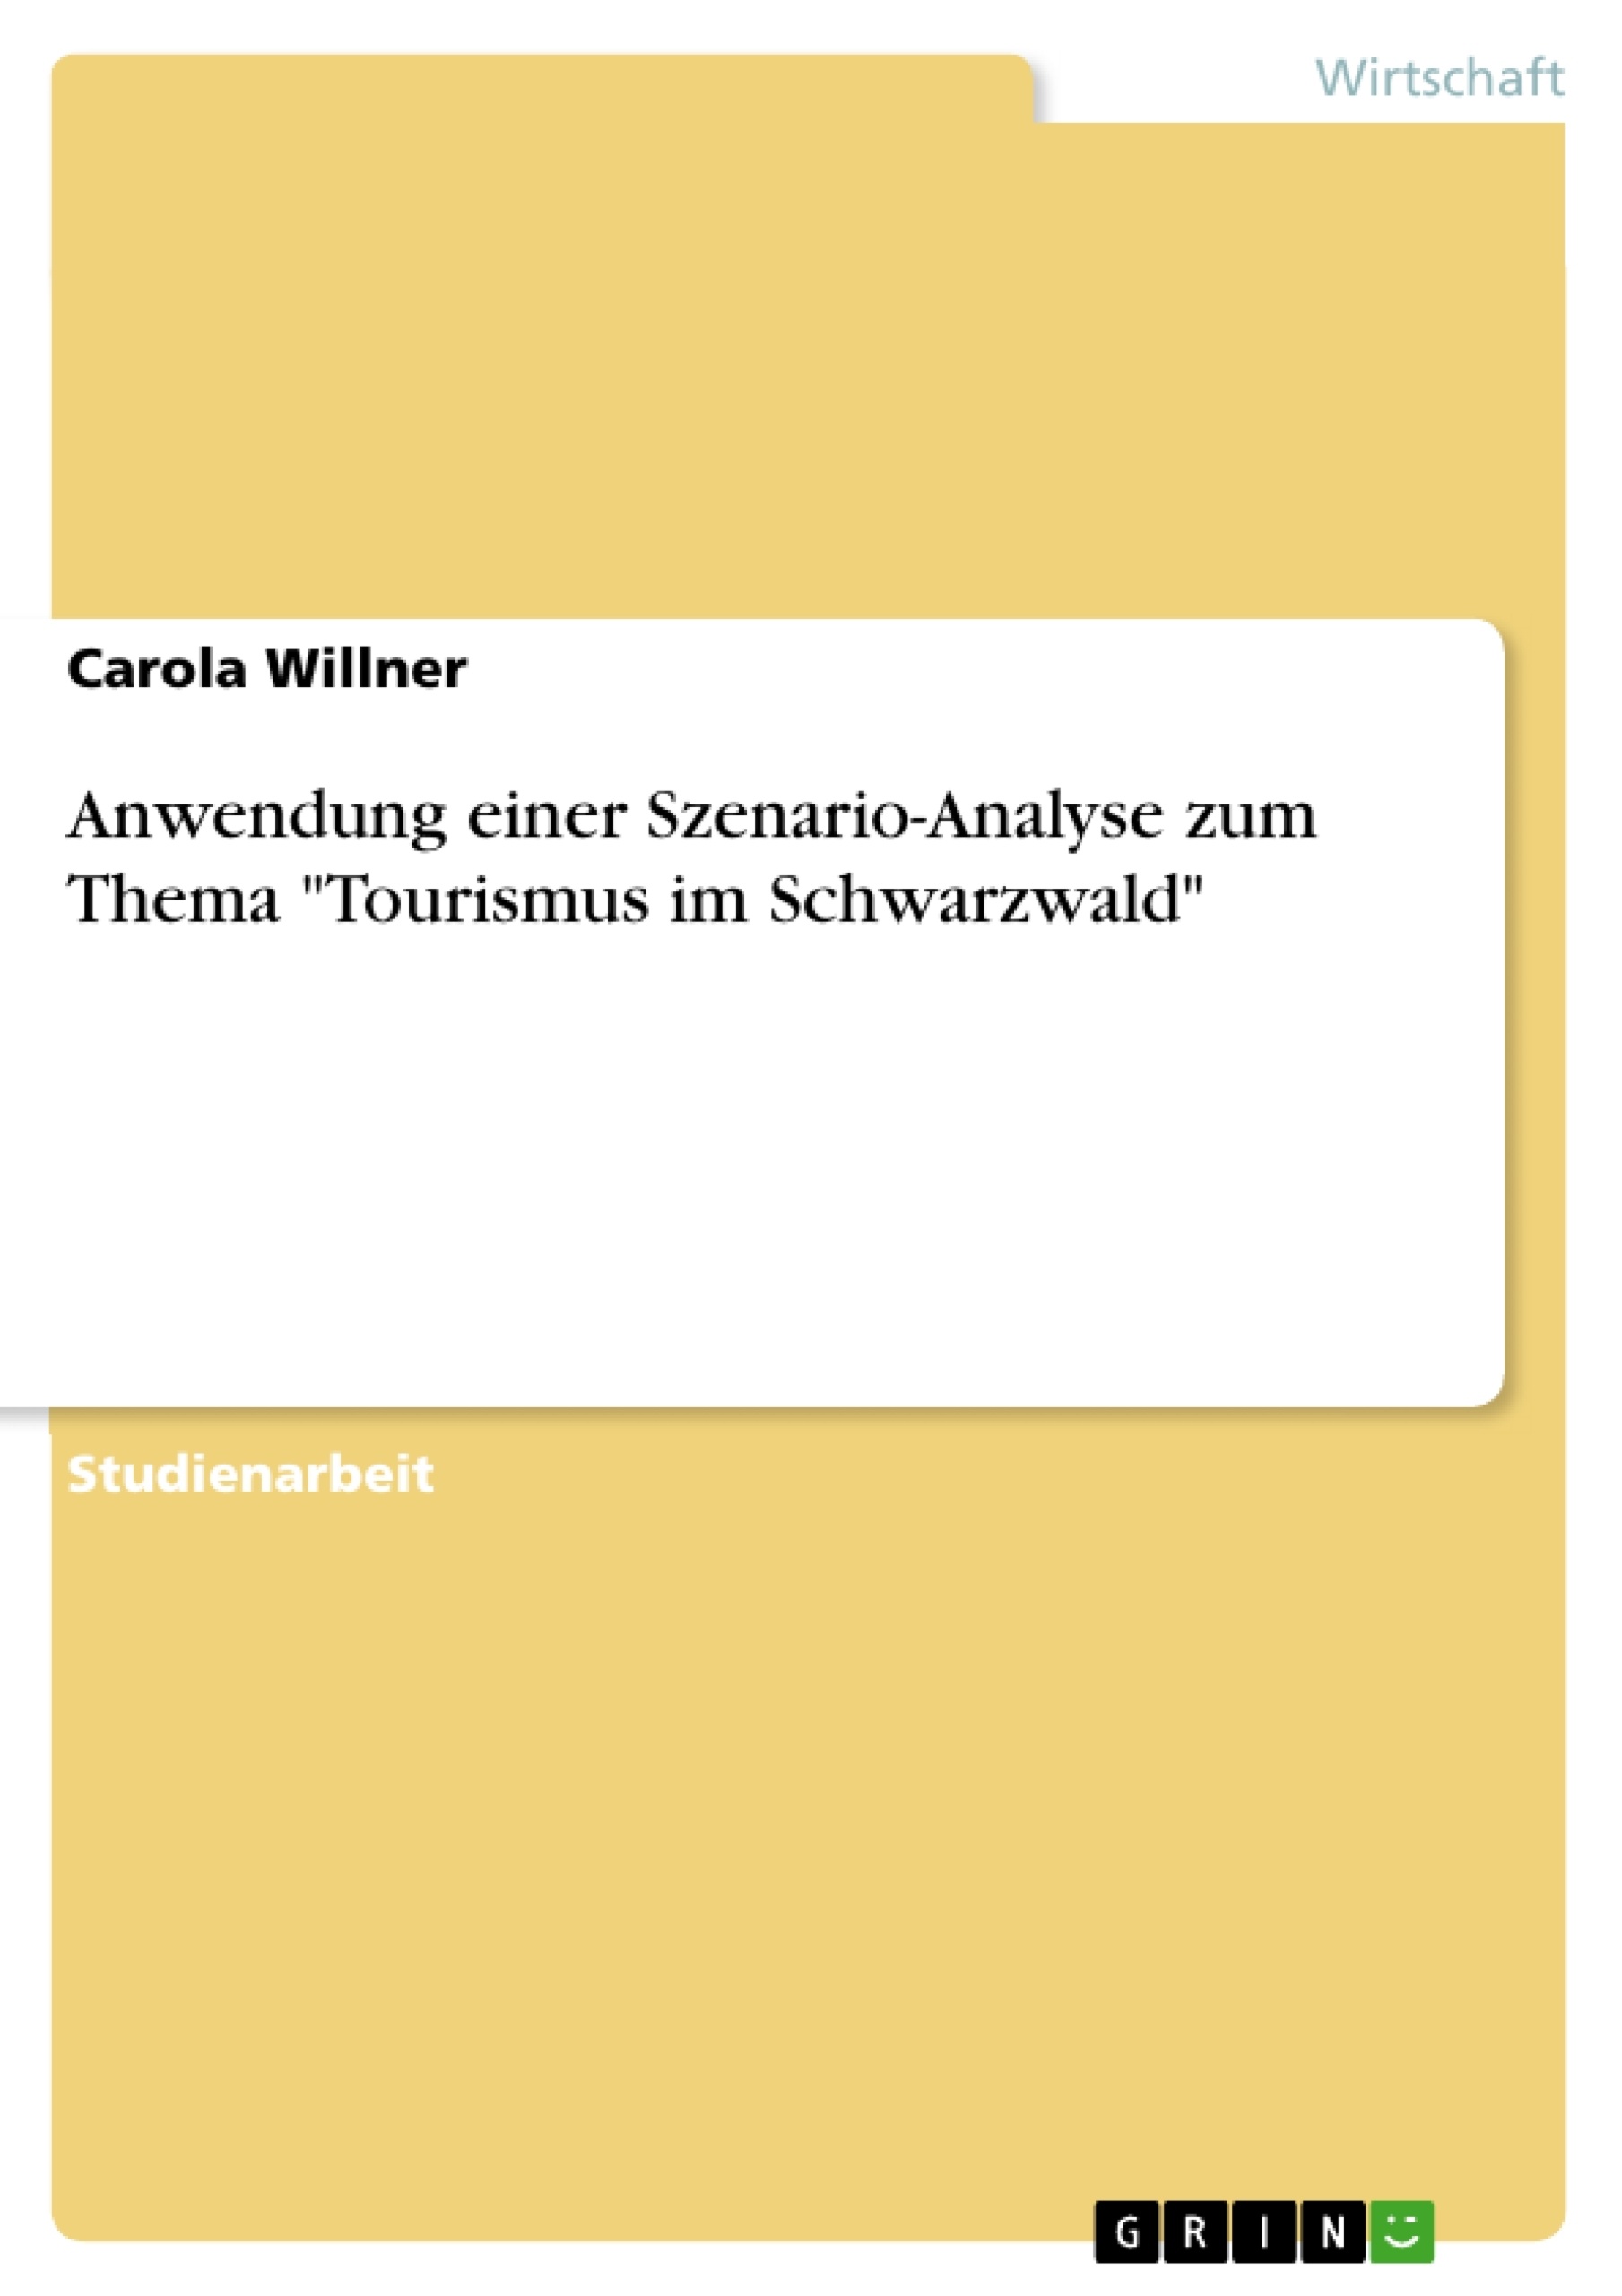 Titre: Anwendung einer Szenario-Analyse zum Thema "Tourismus im Schwarzwald"